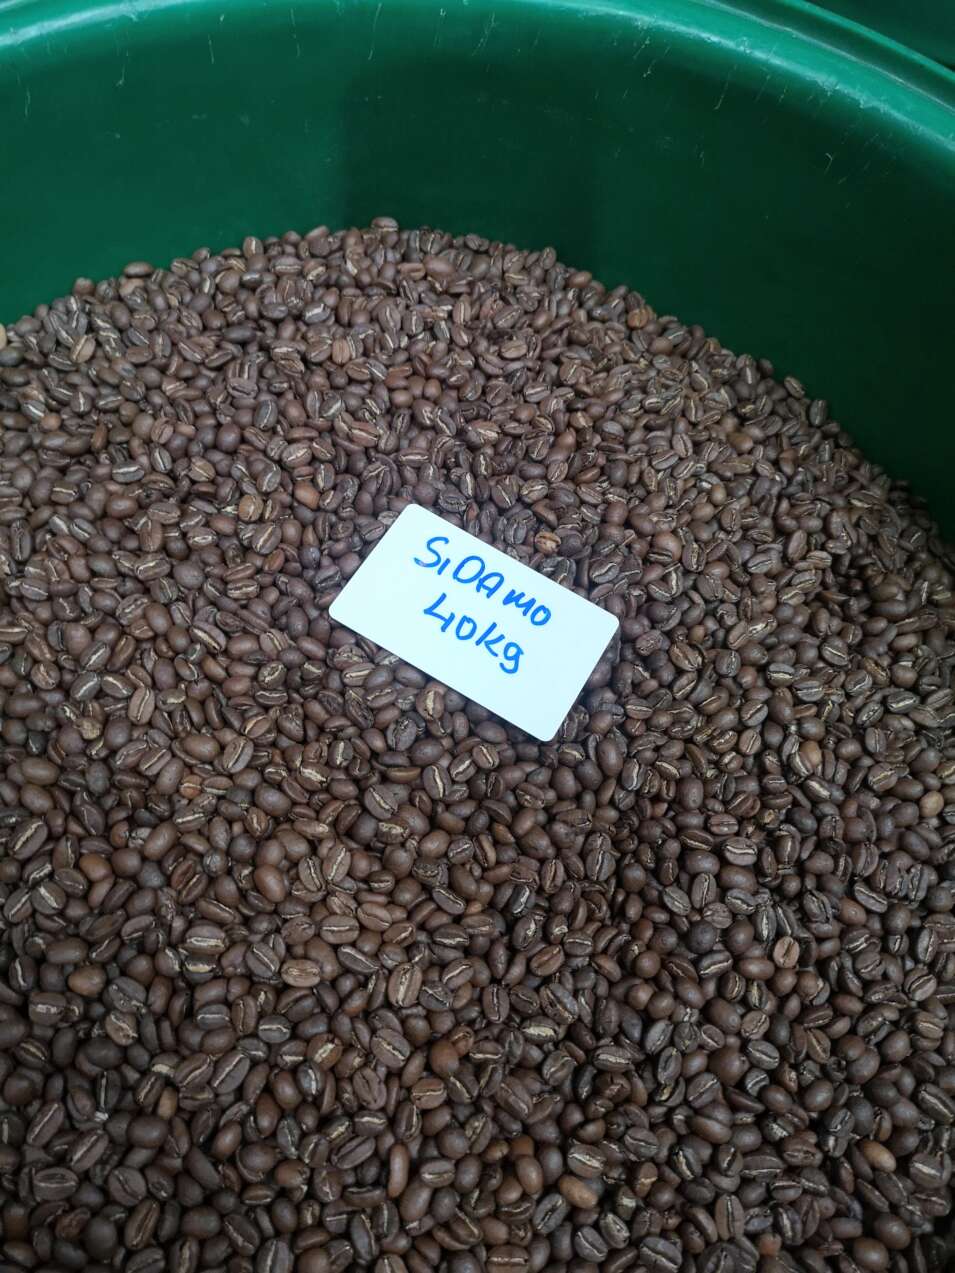 Ethiopian coffee beans Sidamo